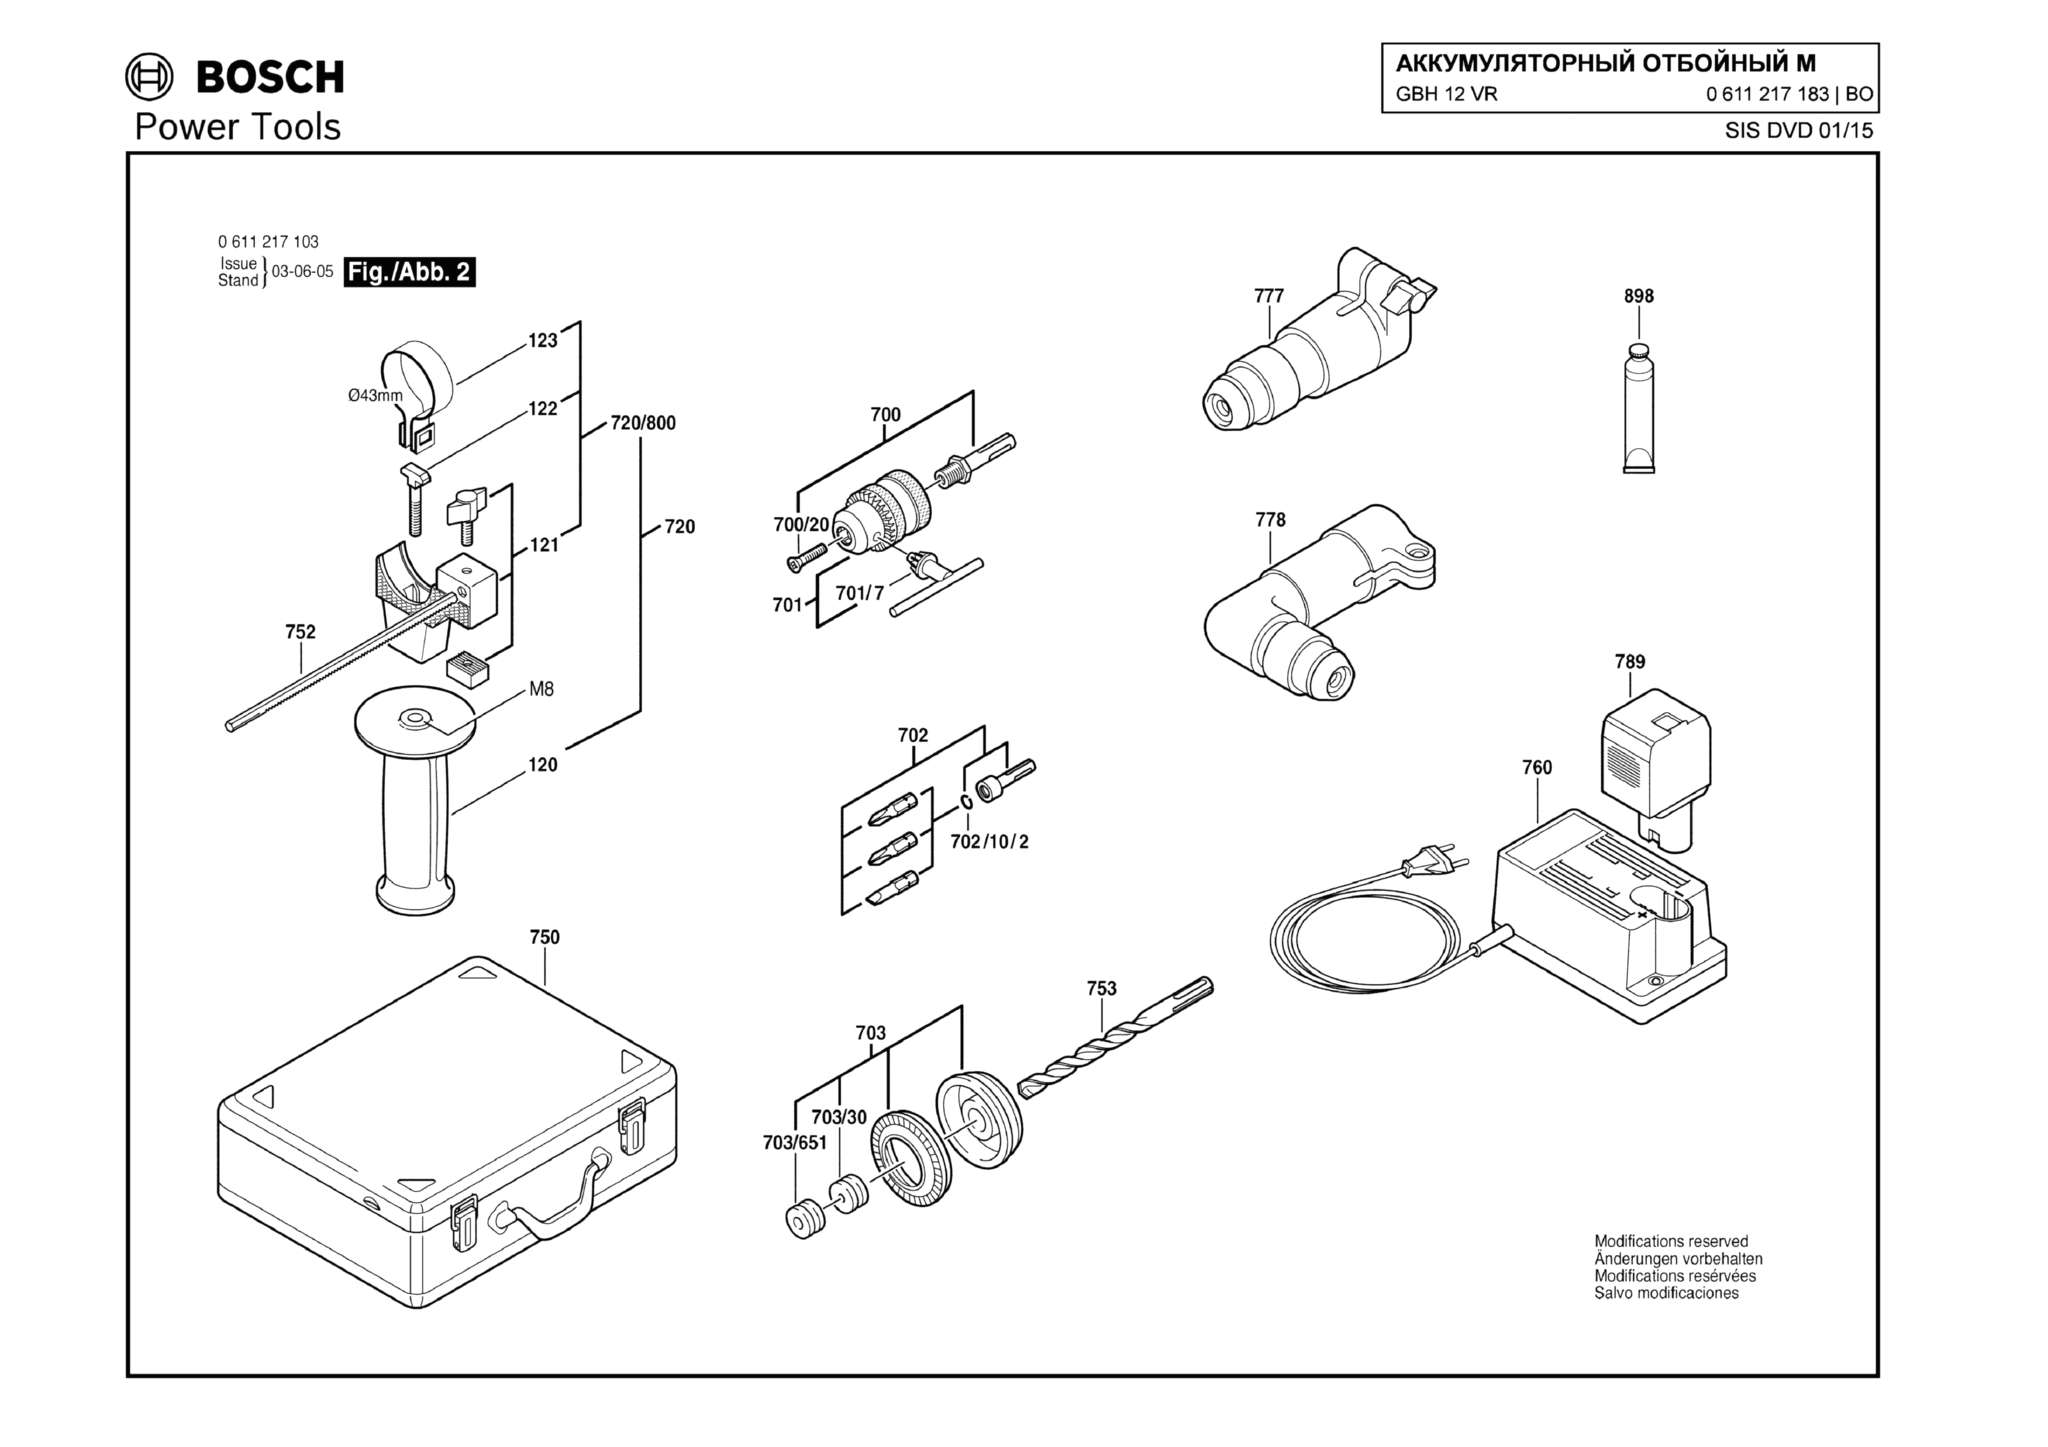 Запчасти, схема и деталировка Bosch GBH 12 VR (ТИП 0611217183) (ЧАСТЬ 2)